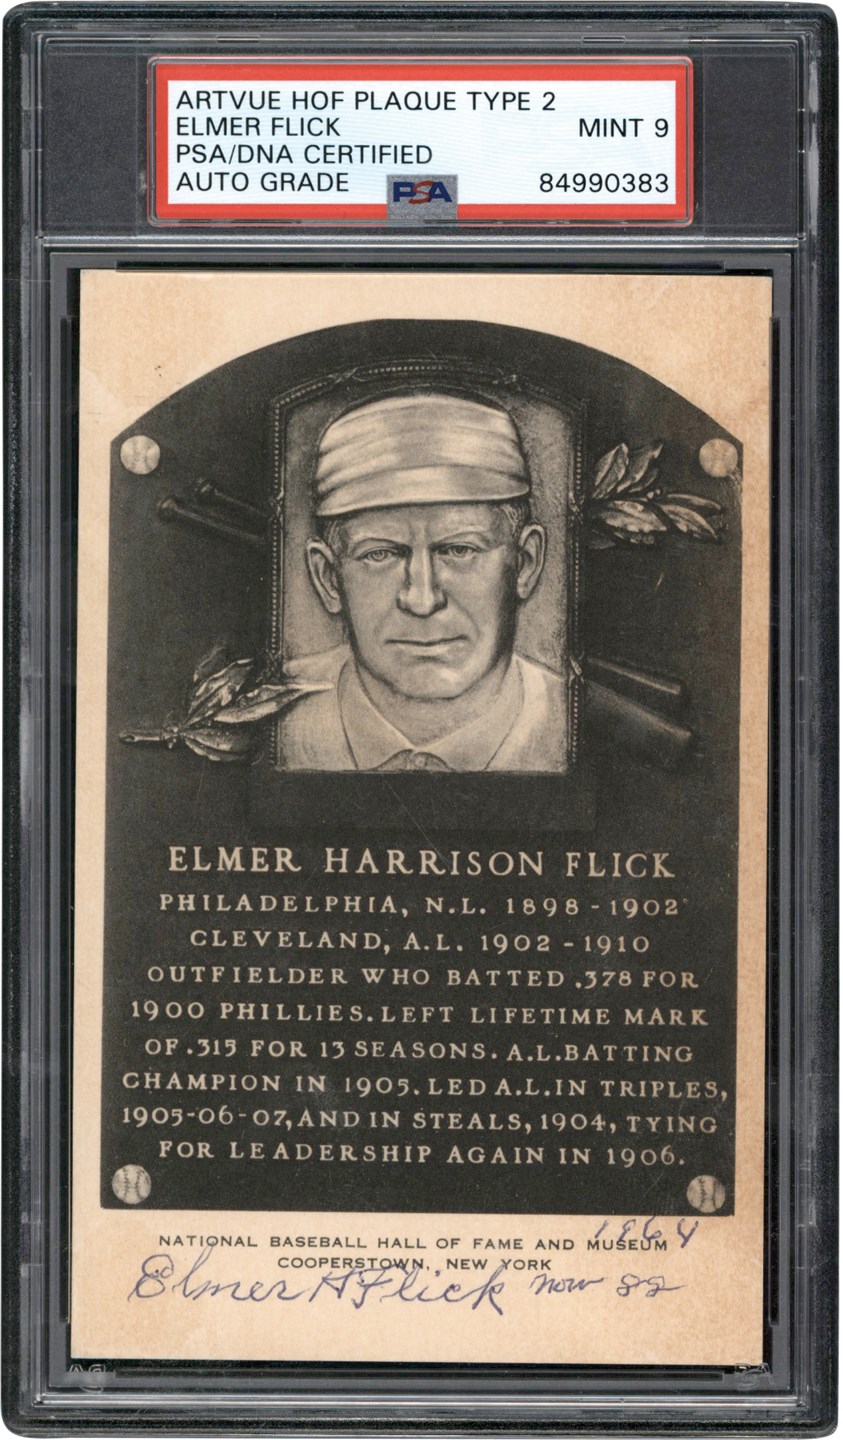 - 1964 Elmer Flick Triple-Signed Artvue Hall of Fame Postcard (PSA MINT 9)